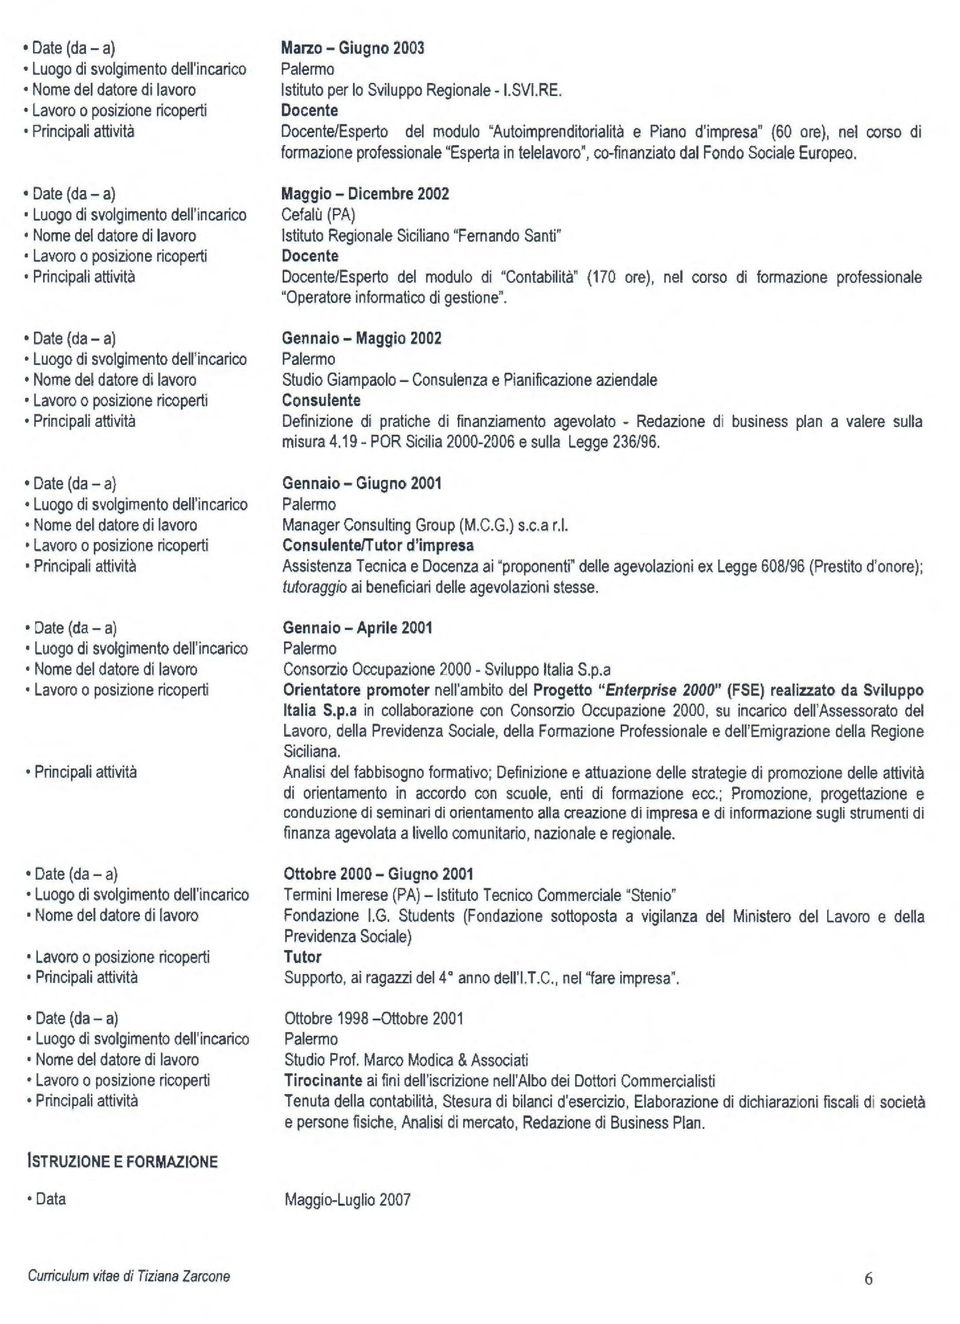 Maggio - Dicembre 2002 Cefalù (PA) Istituto Regionale Siciliano "Fernando Santi" Docente Docente/Esperto del modulo di "Contabilità" (170 ore), nel corso di formazione professionale "Operatore